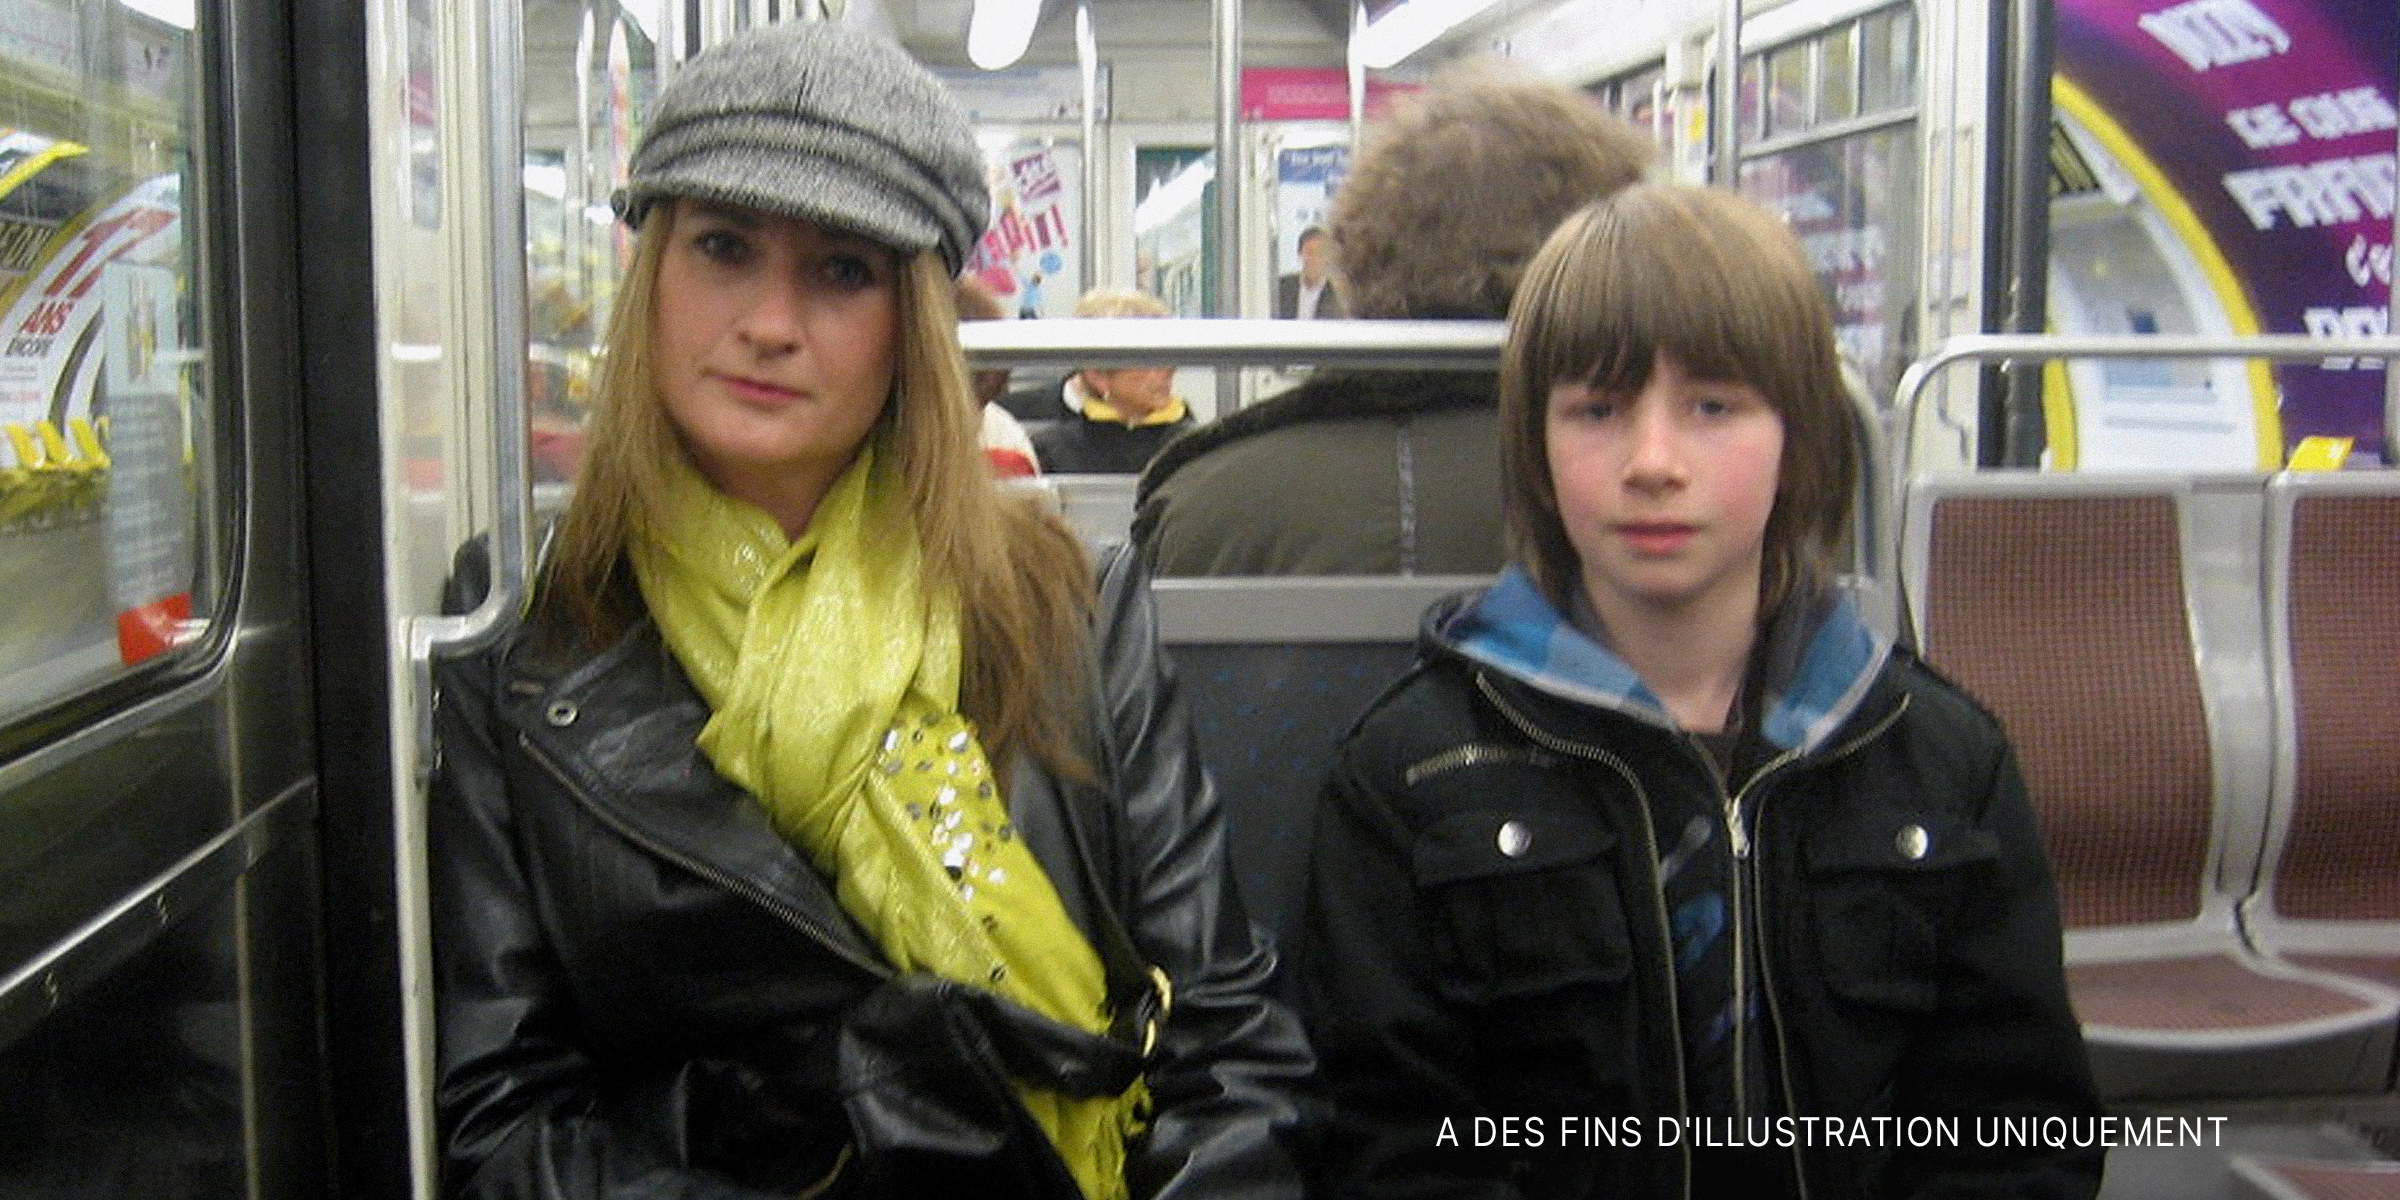 Une femme et son fils dans le métro | Source : Flickr/SteveR-/CC BY 2.0